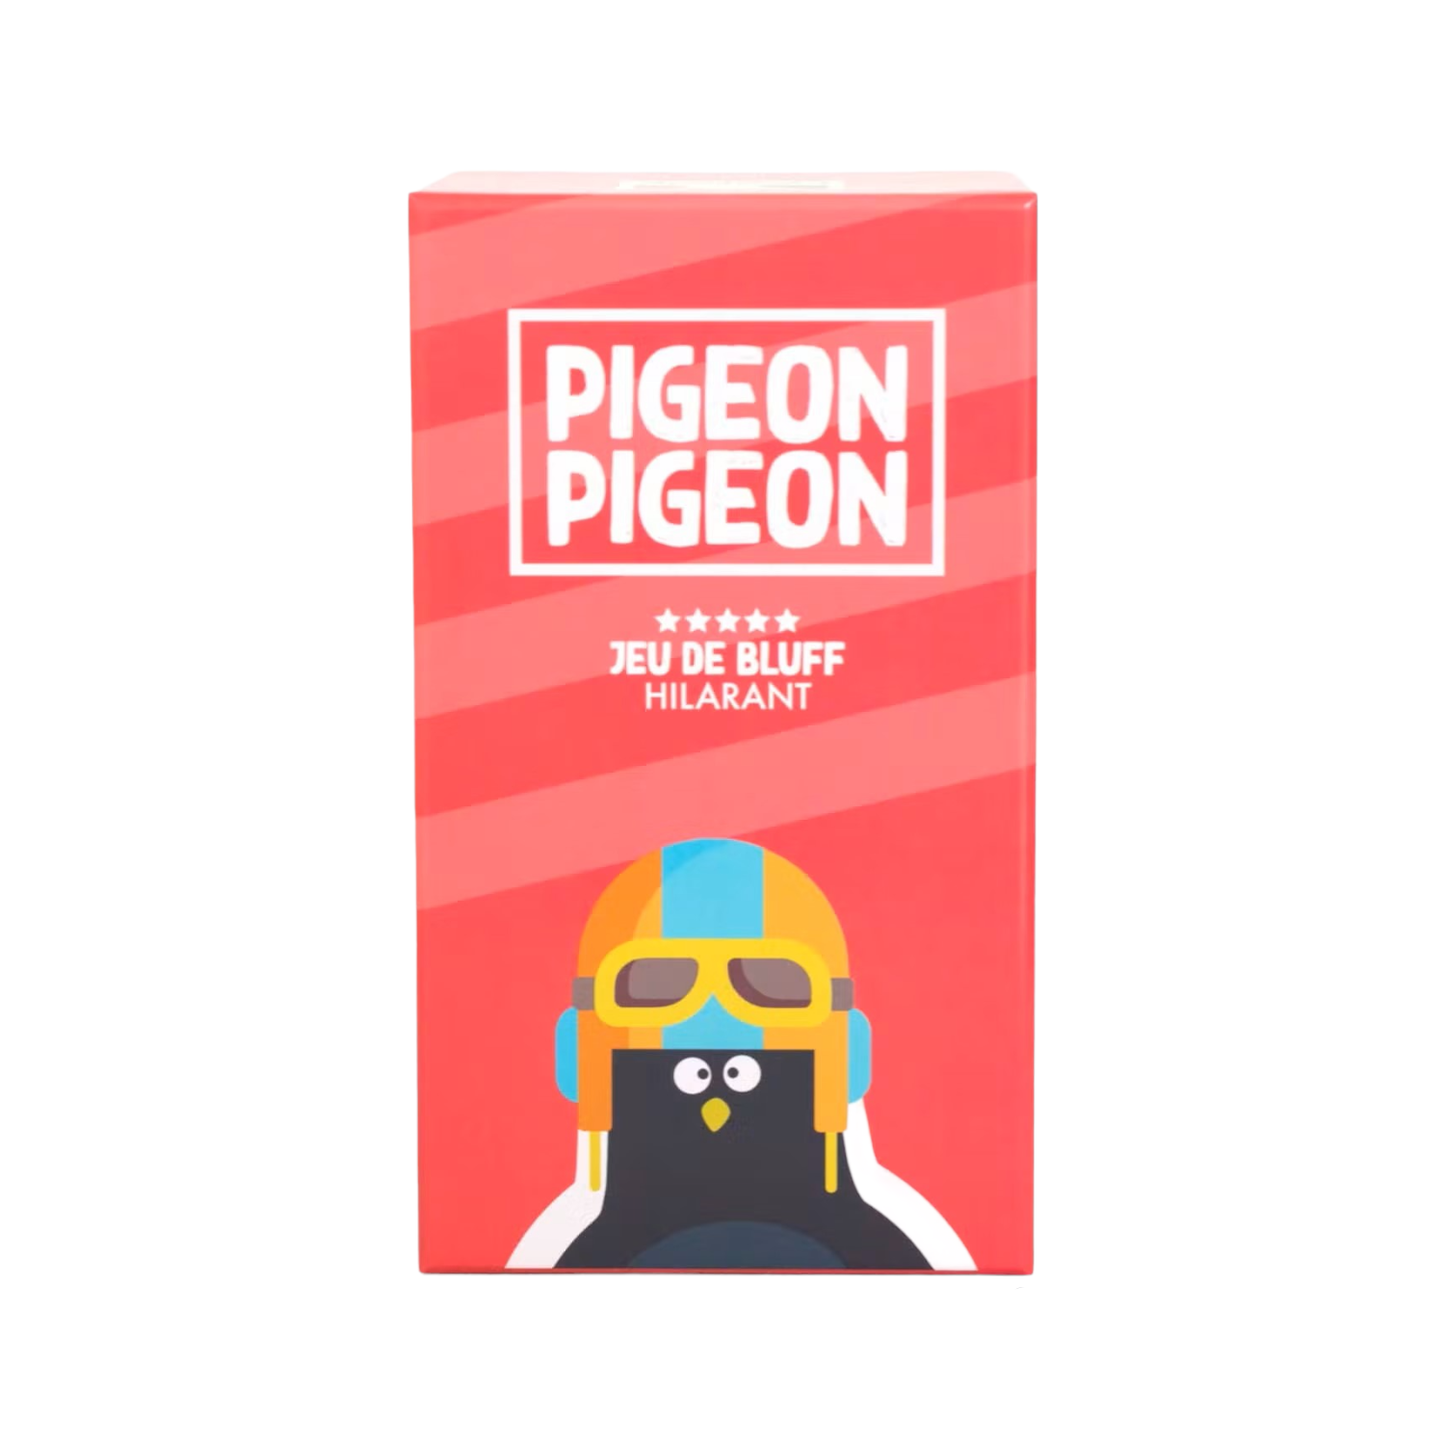 Jeu de société | Pigeon Pigeon | Version rouge